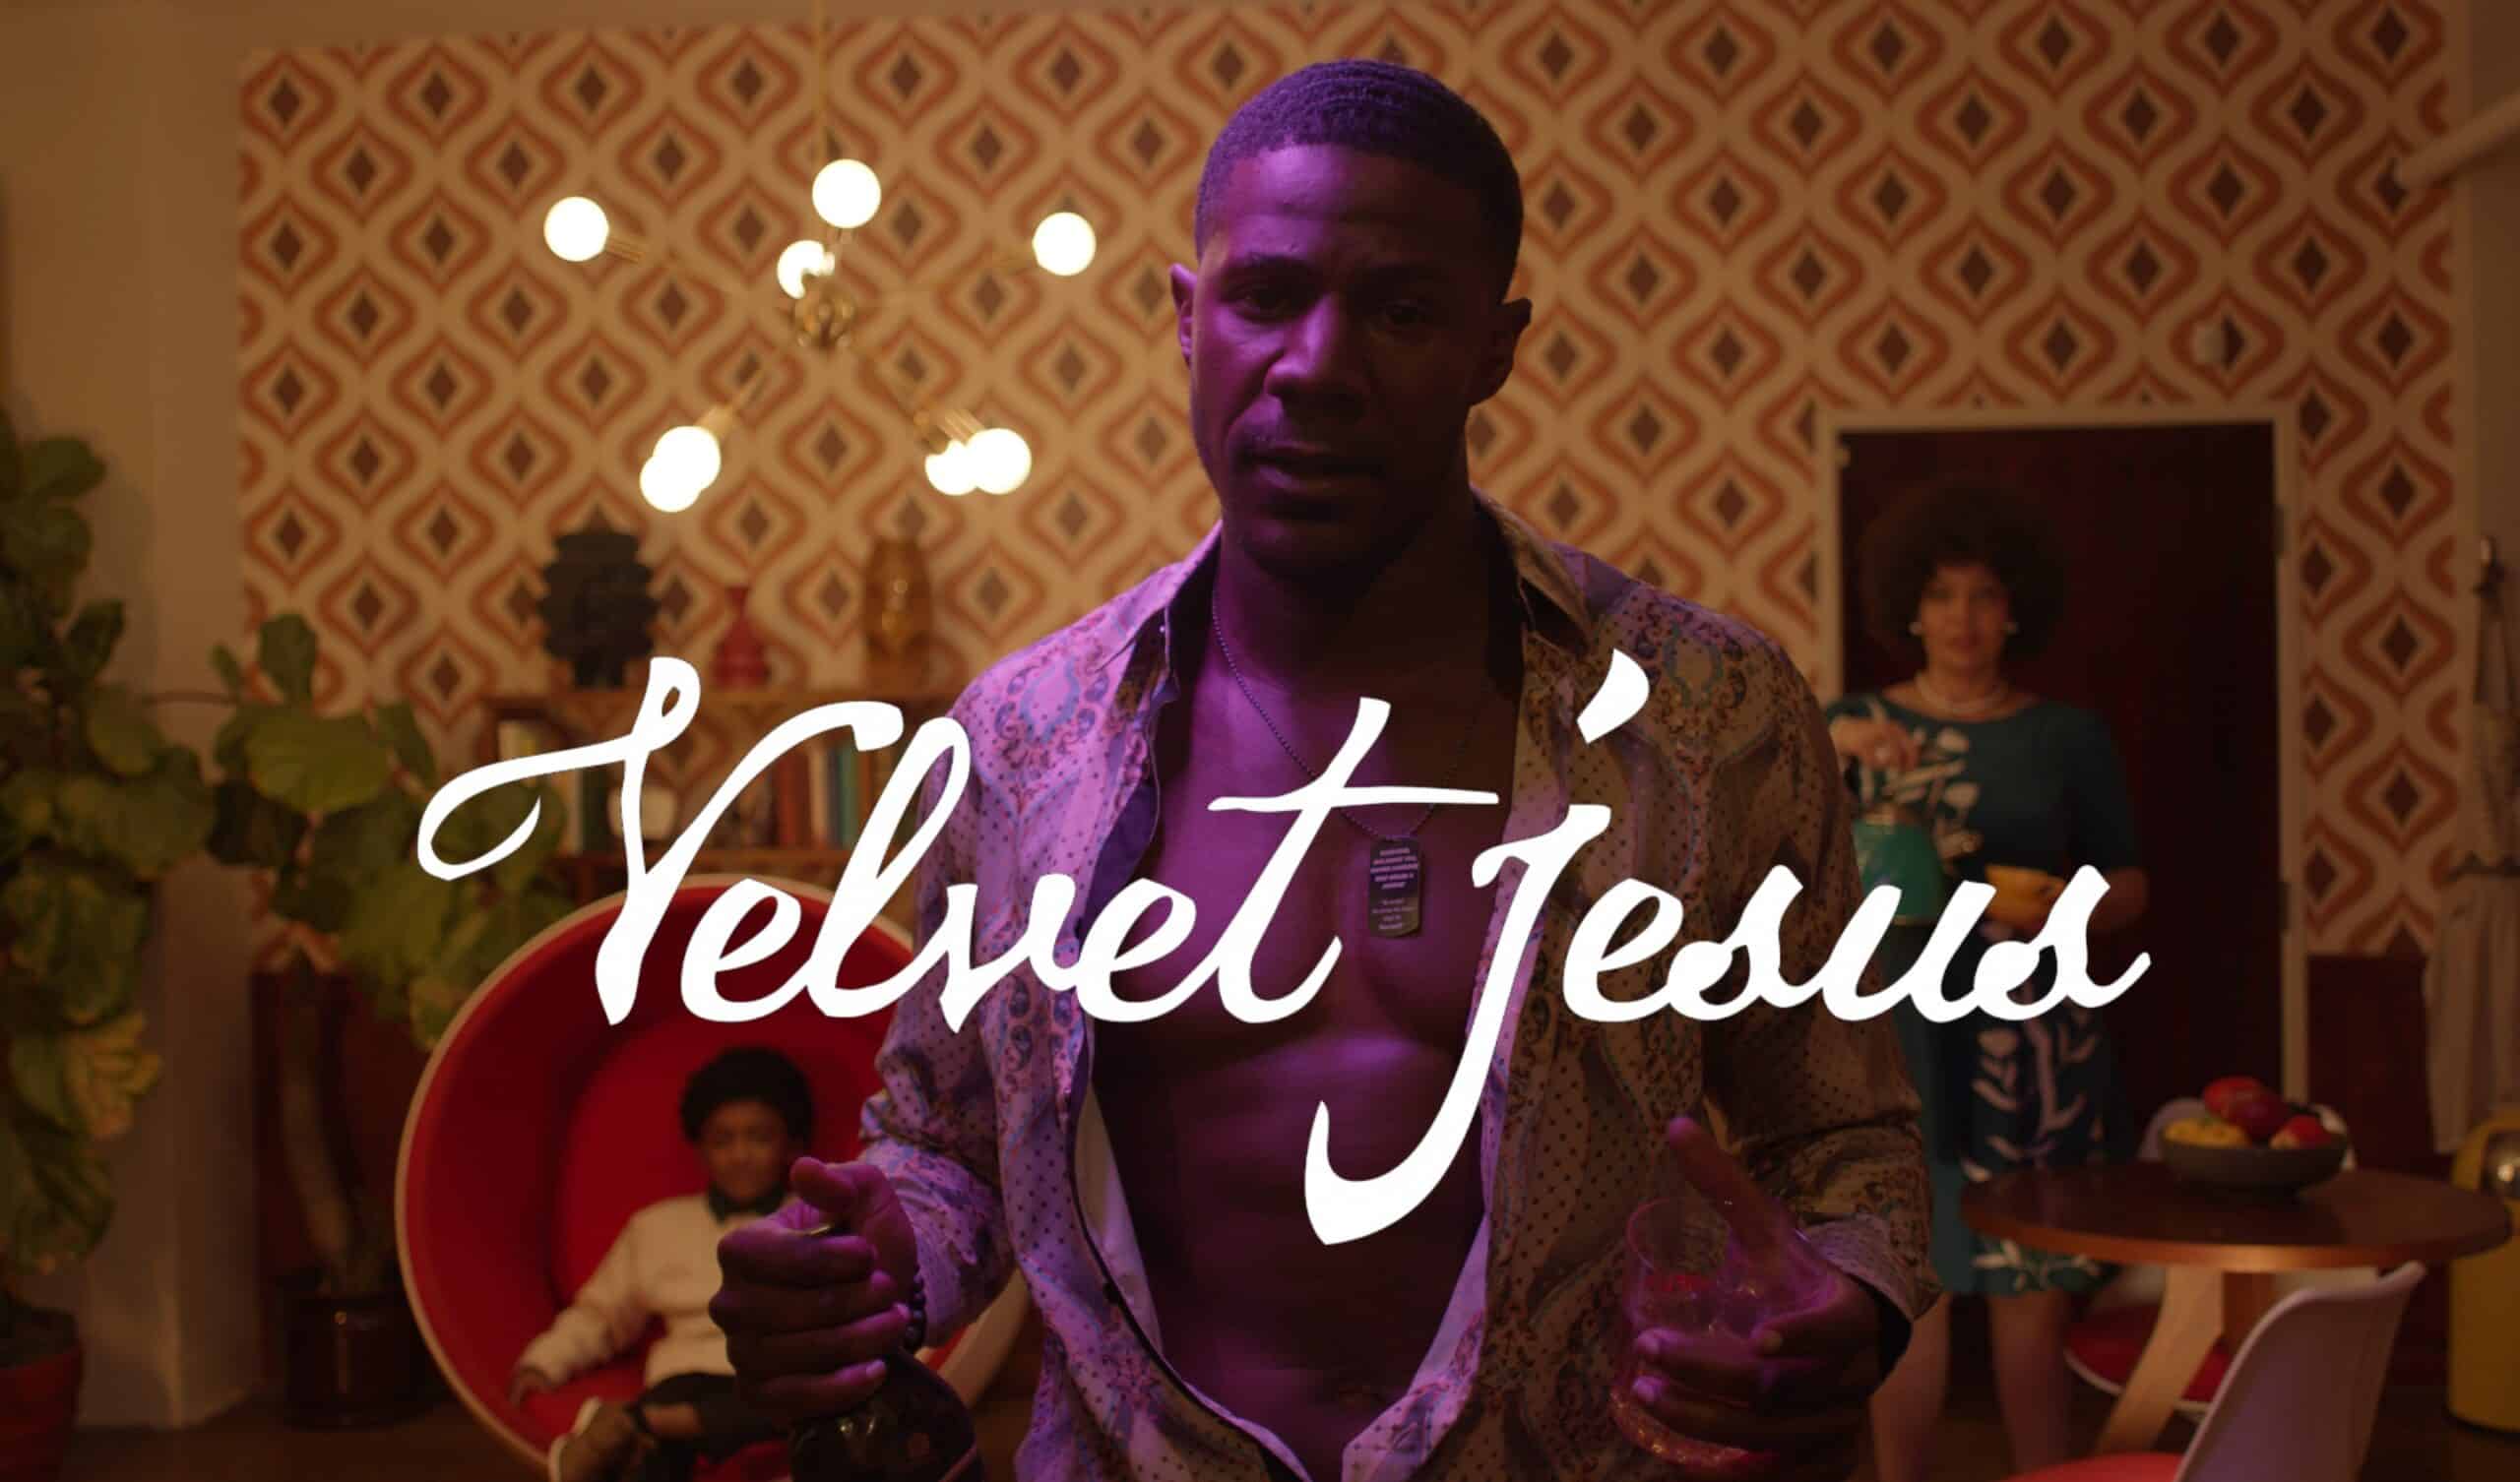 Velvet Jesus profile